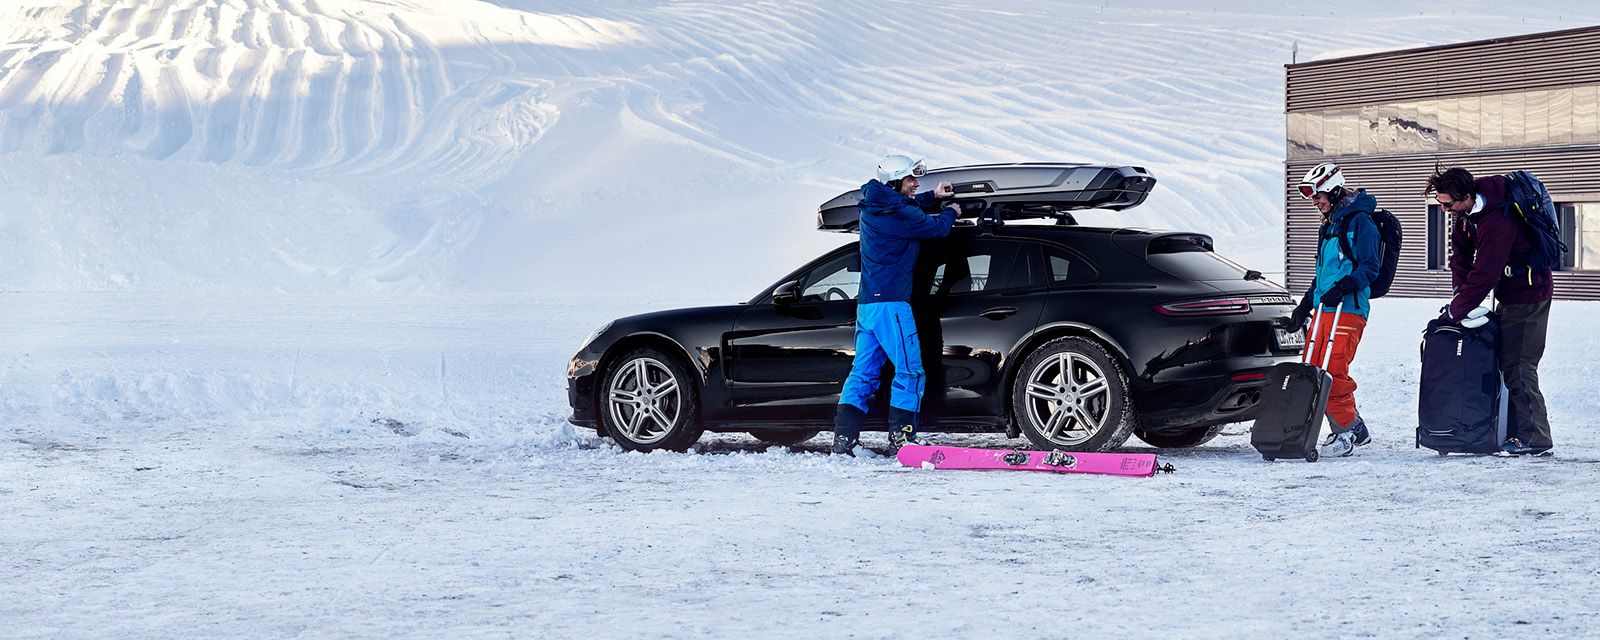 I snøen laster to personer med skiutstyr tingene sine inn i en bil og en lasteboks på taket.